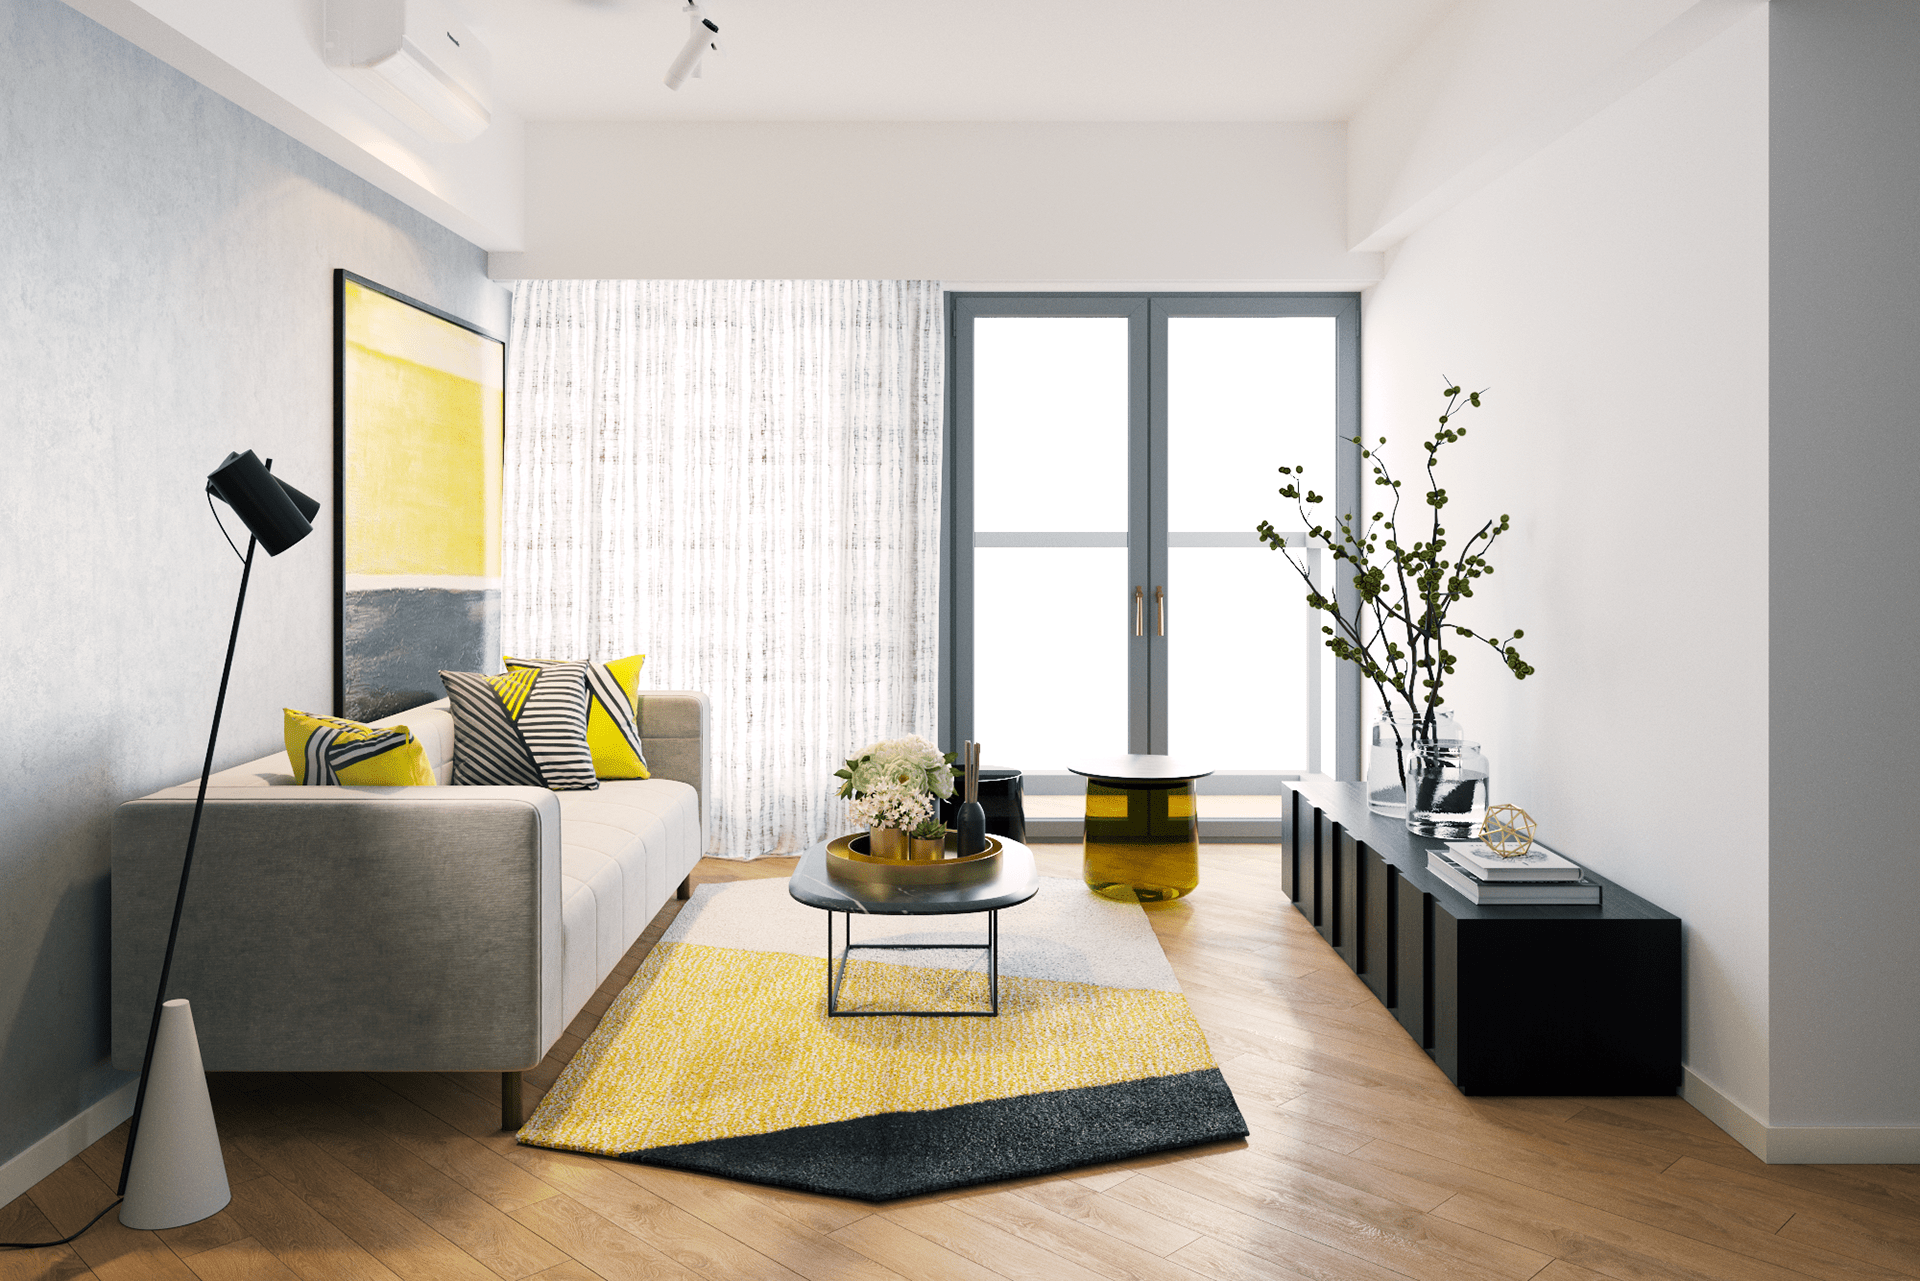 IconP - Thiết kế chung cư căn hộ phong cách hiện đại, gam màu đen độc đáo, kết hợp với gỗ và nhấn màu vàng ấn tượng